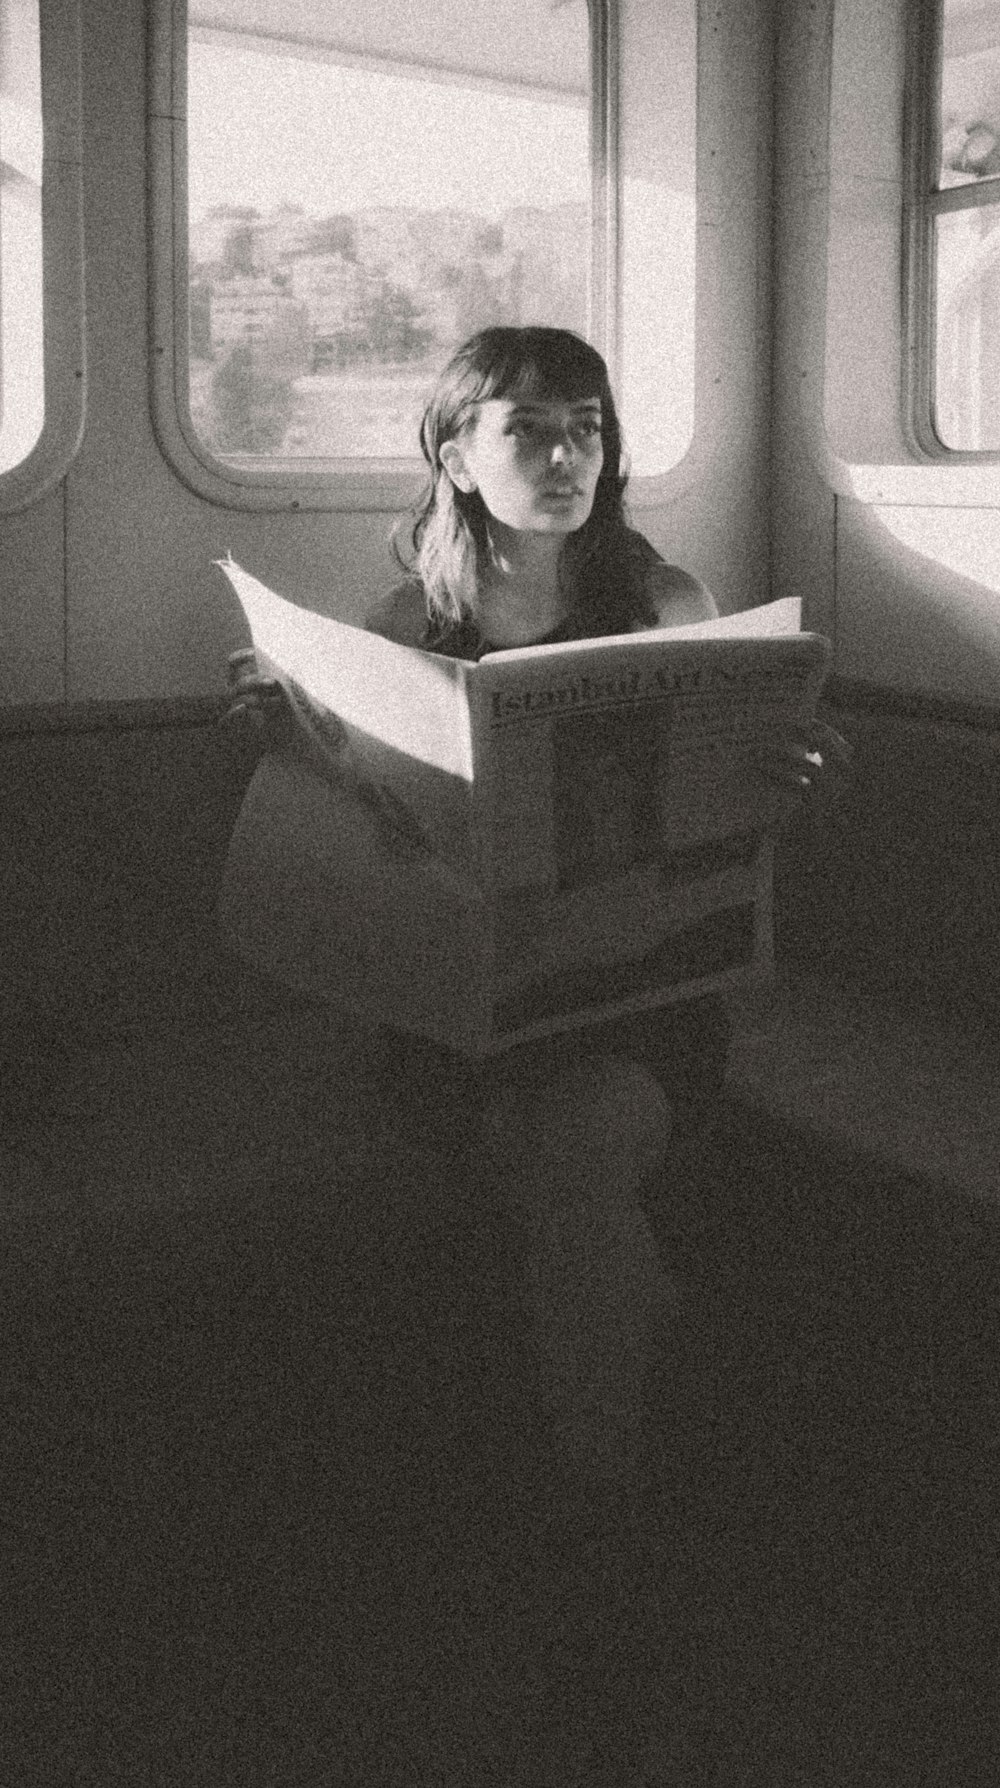 una donna seduta su un treno che legge un libro